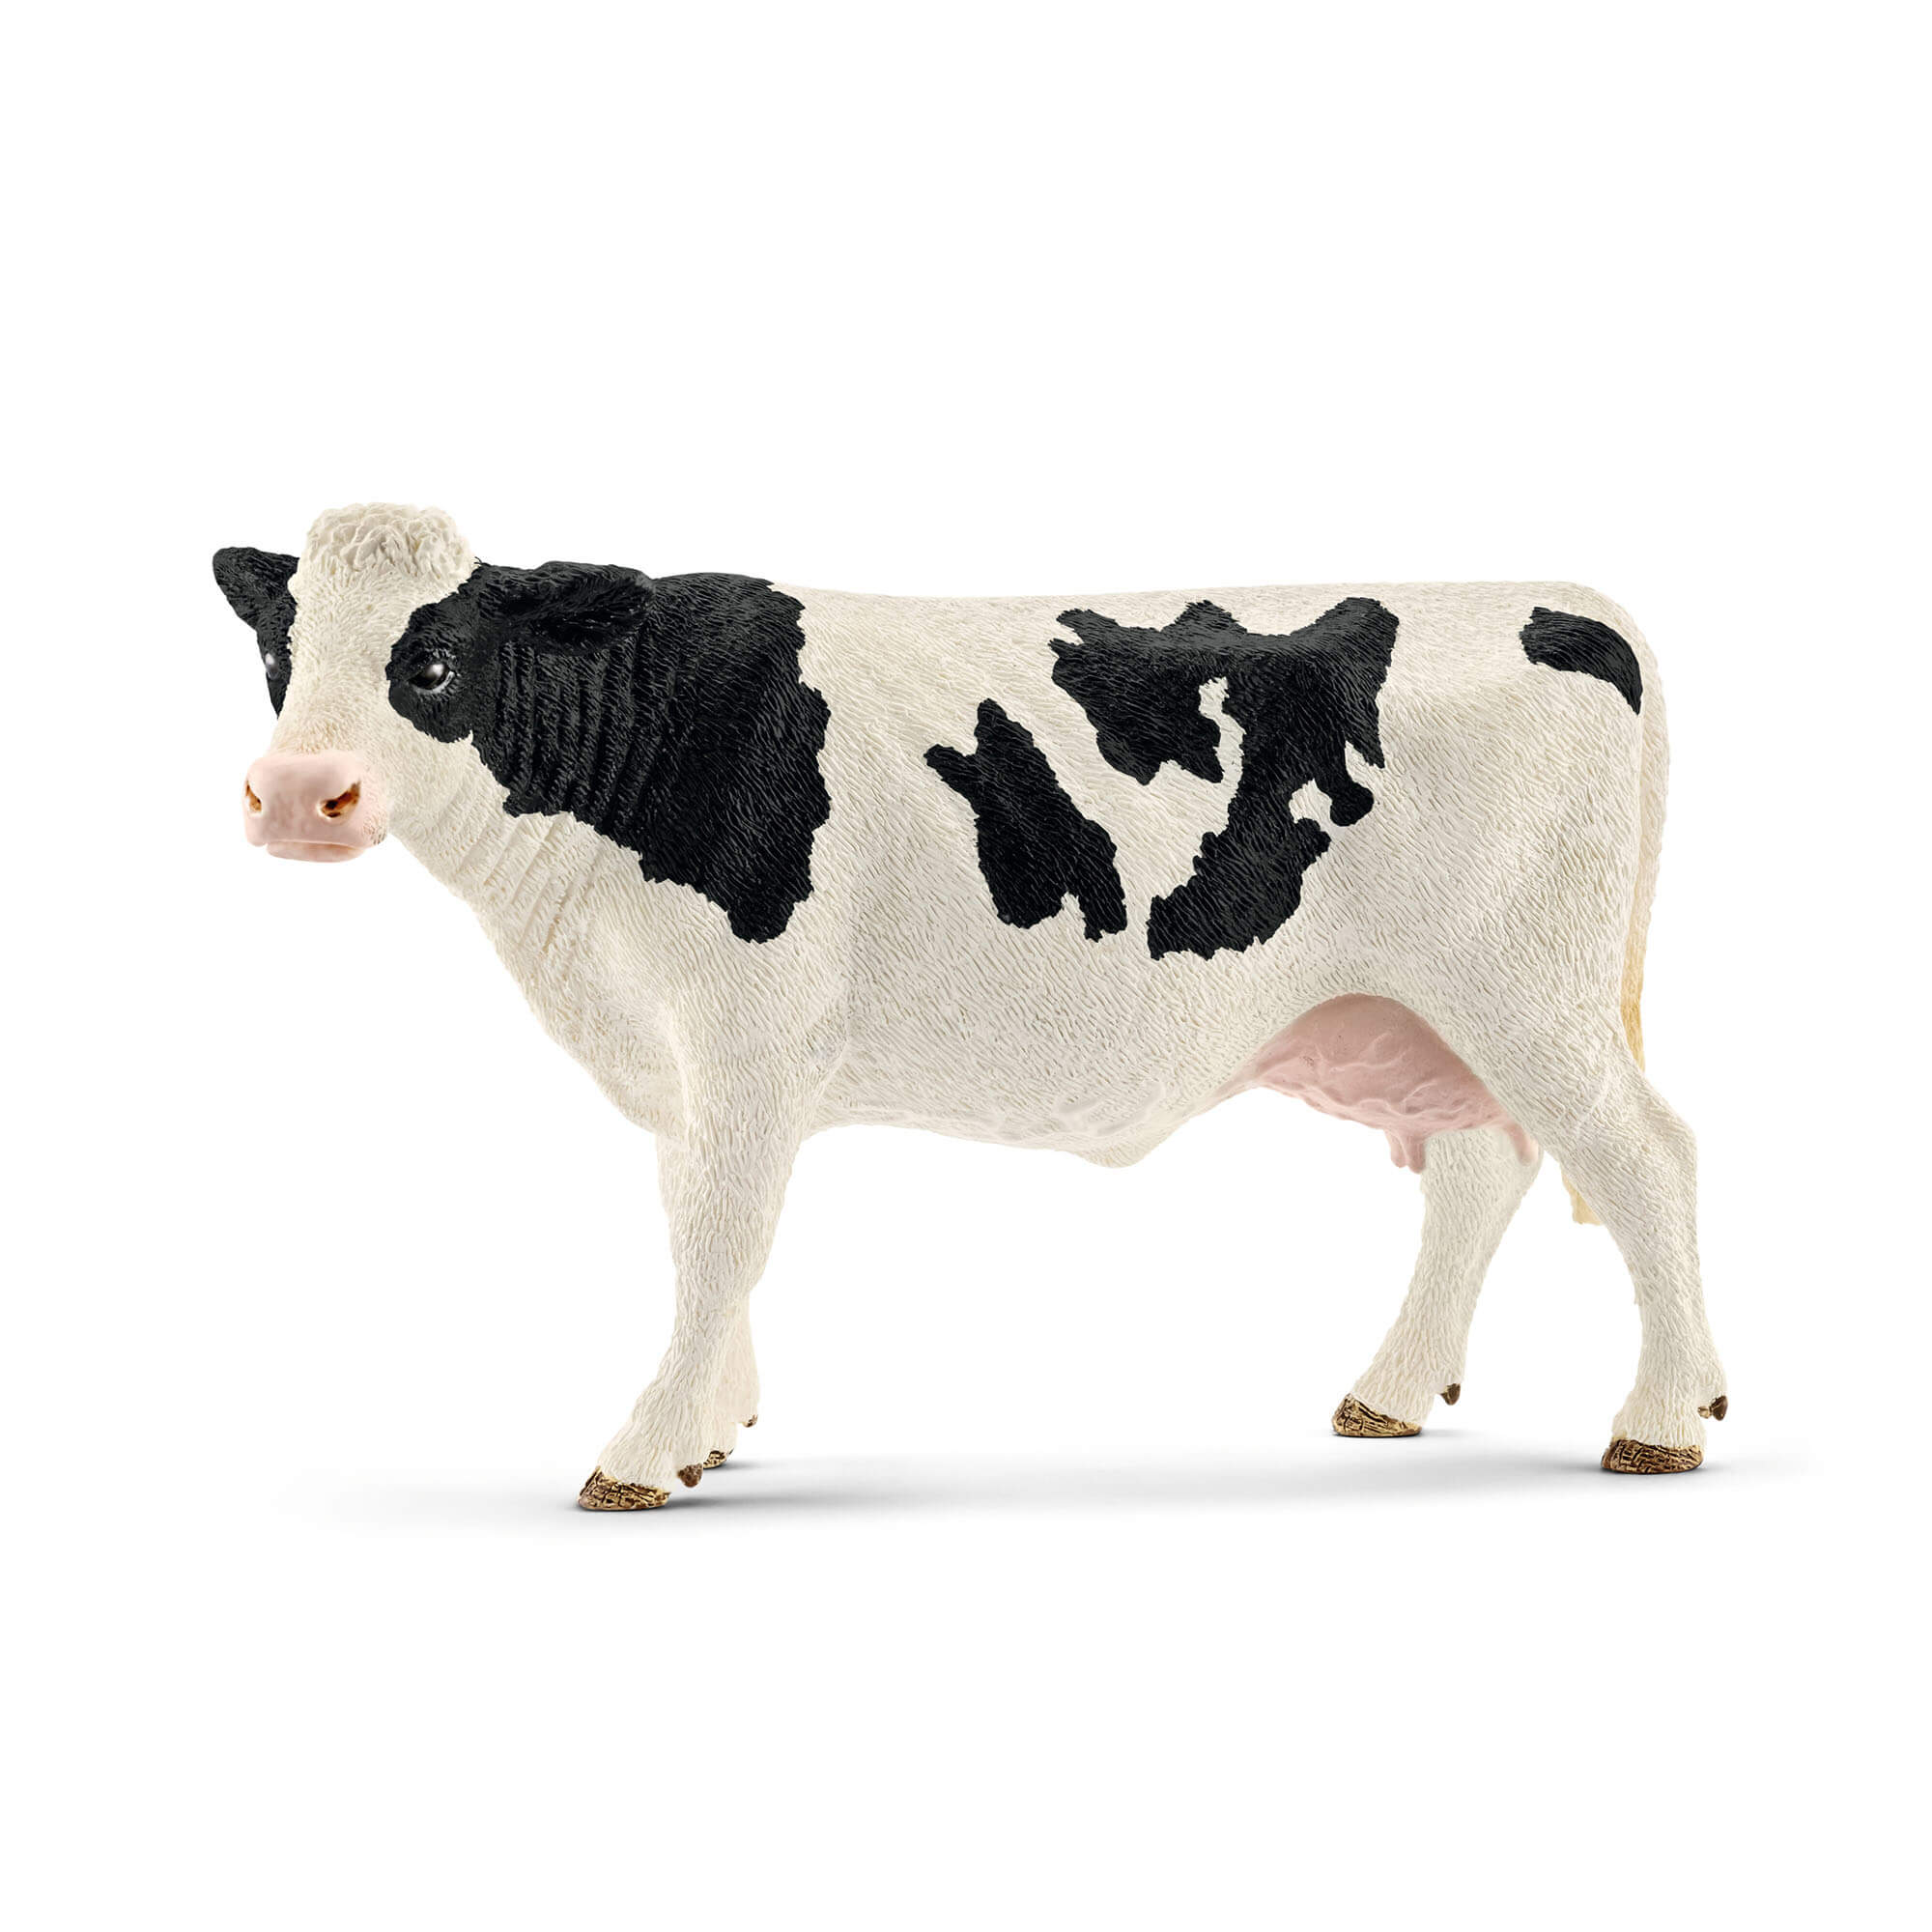 Schleich Farm World Holstein Cow Animal Figure